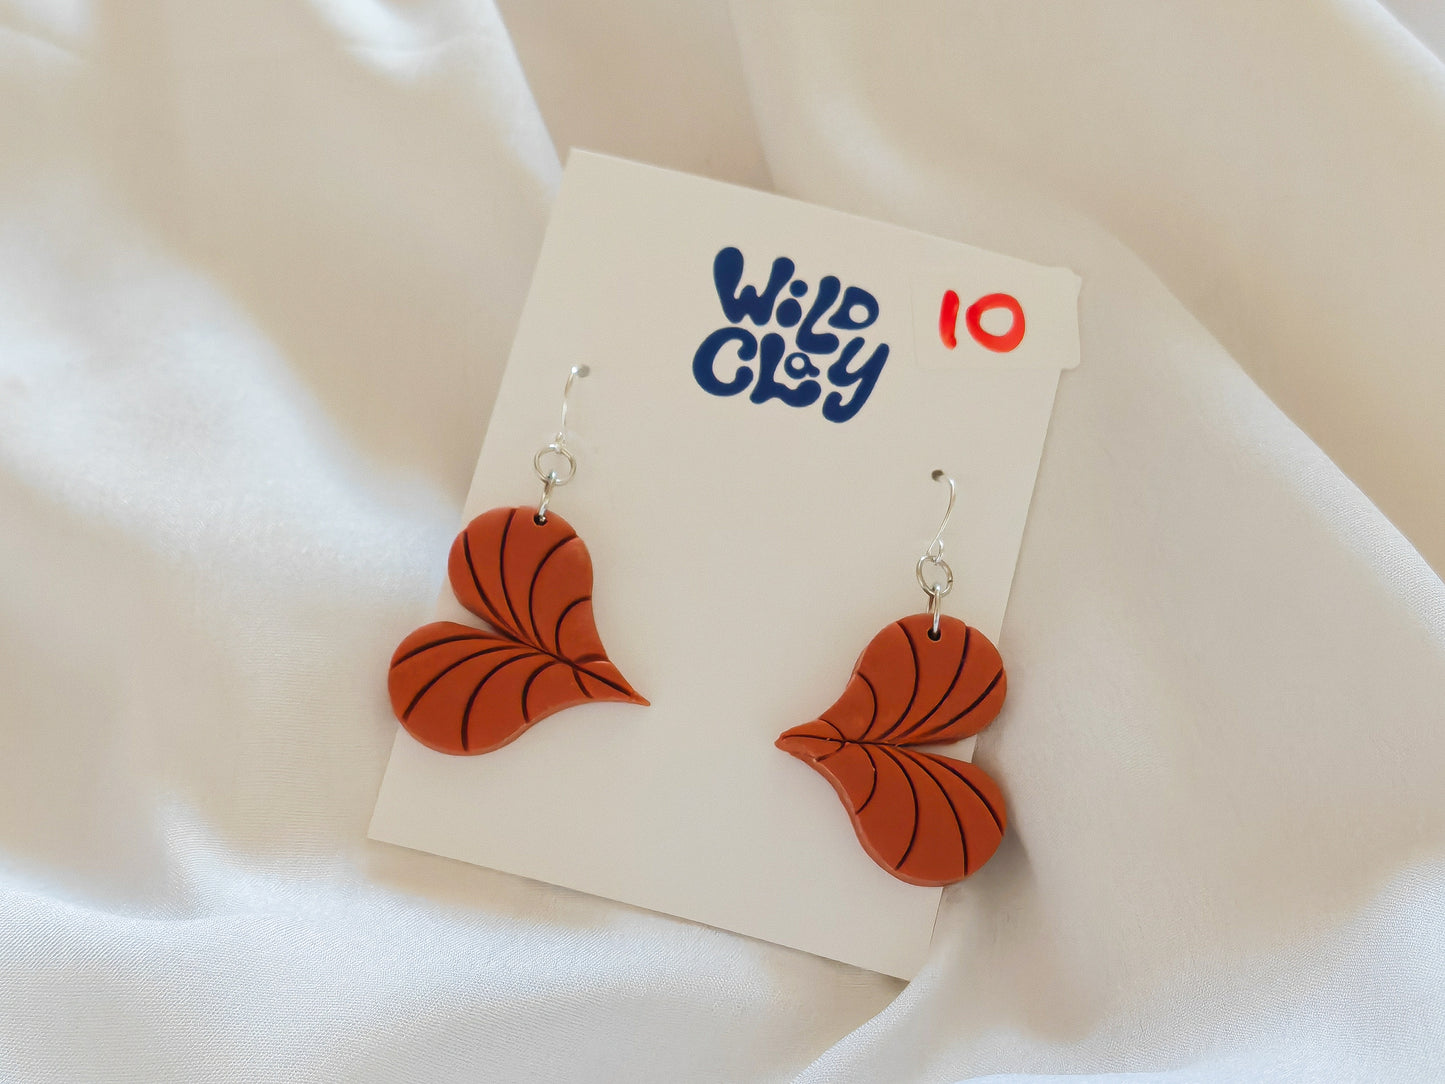 Cinnamon heart shaped leaf earrings